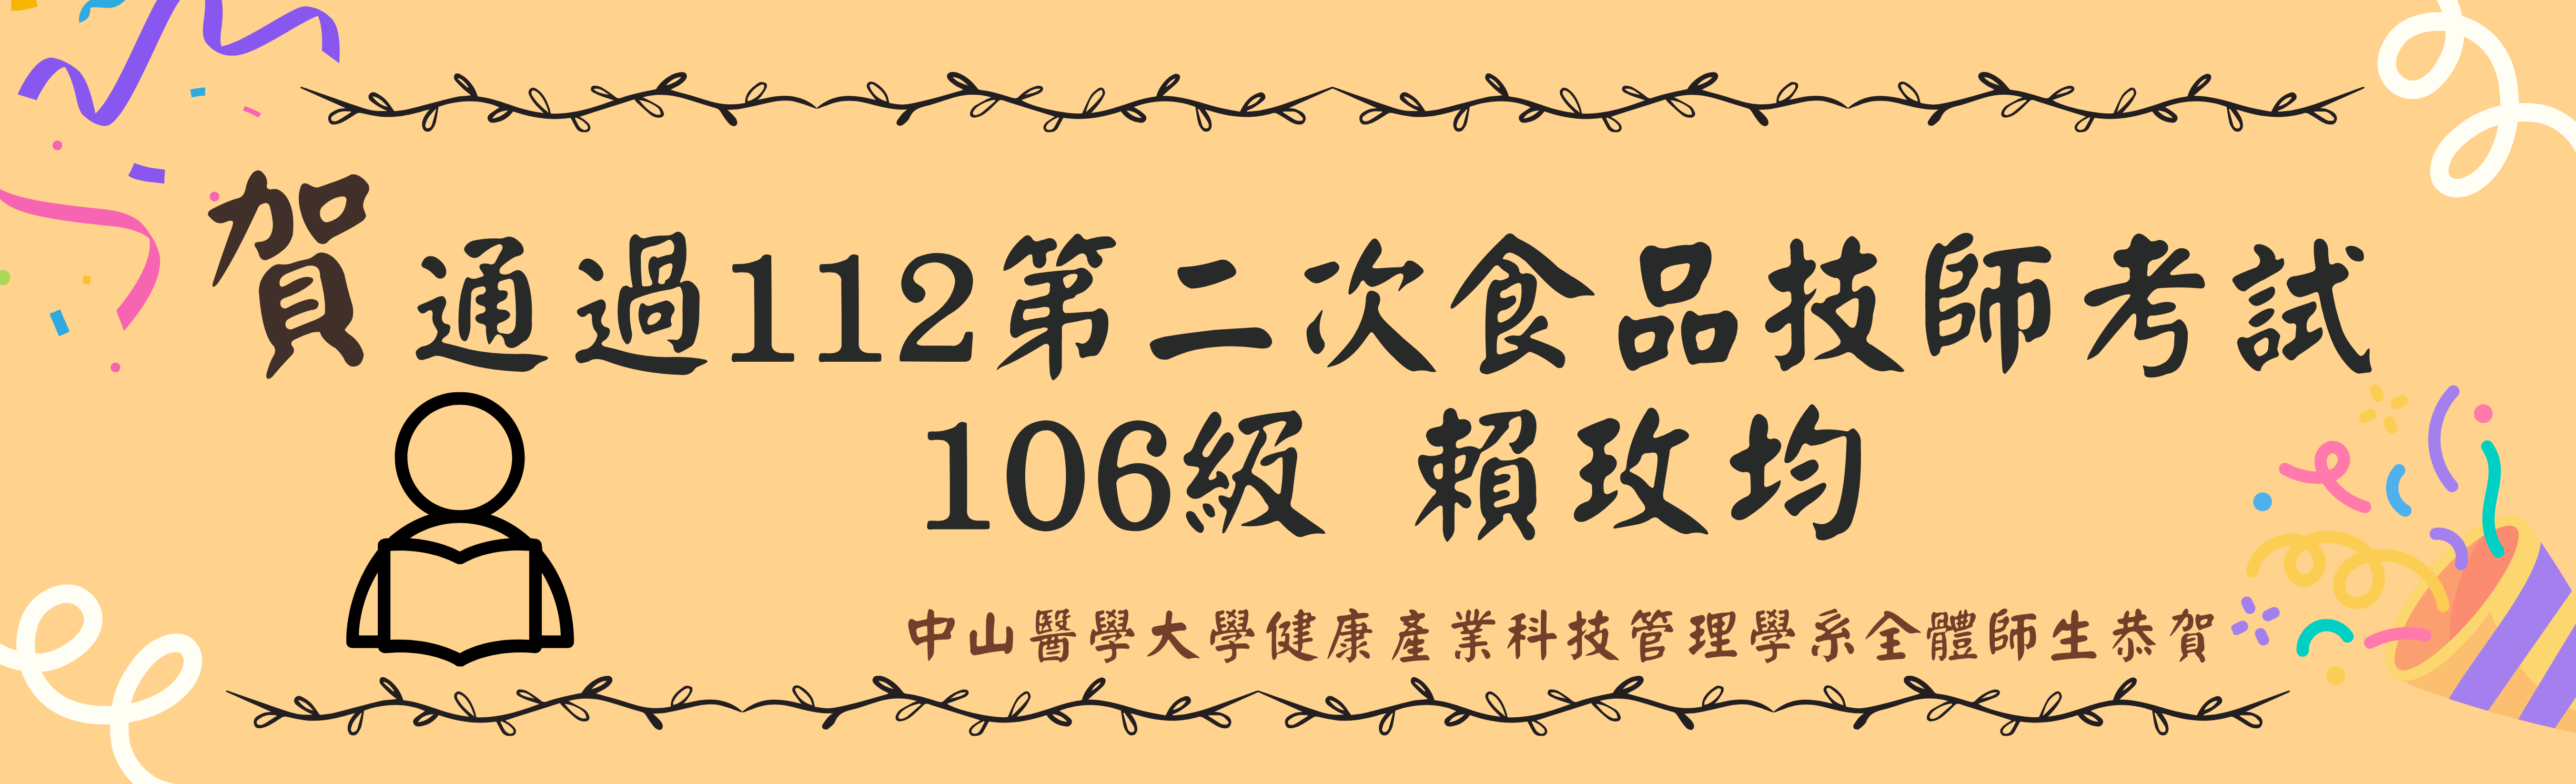 112-2食品技師賀圖